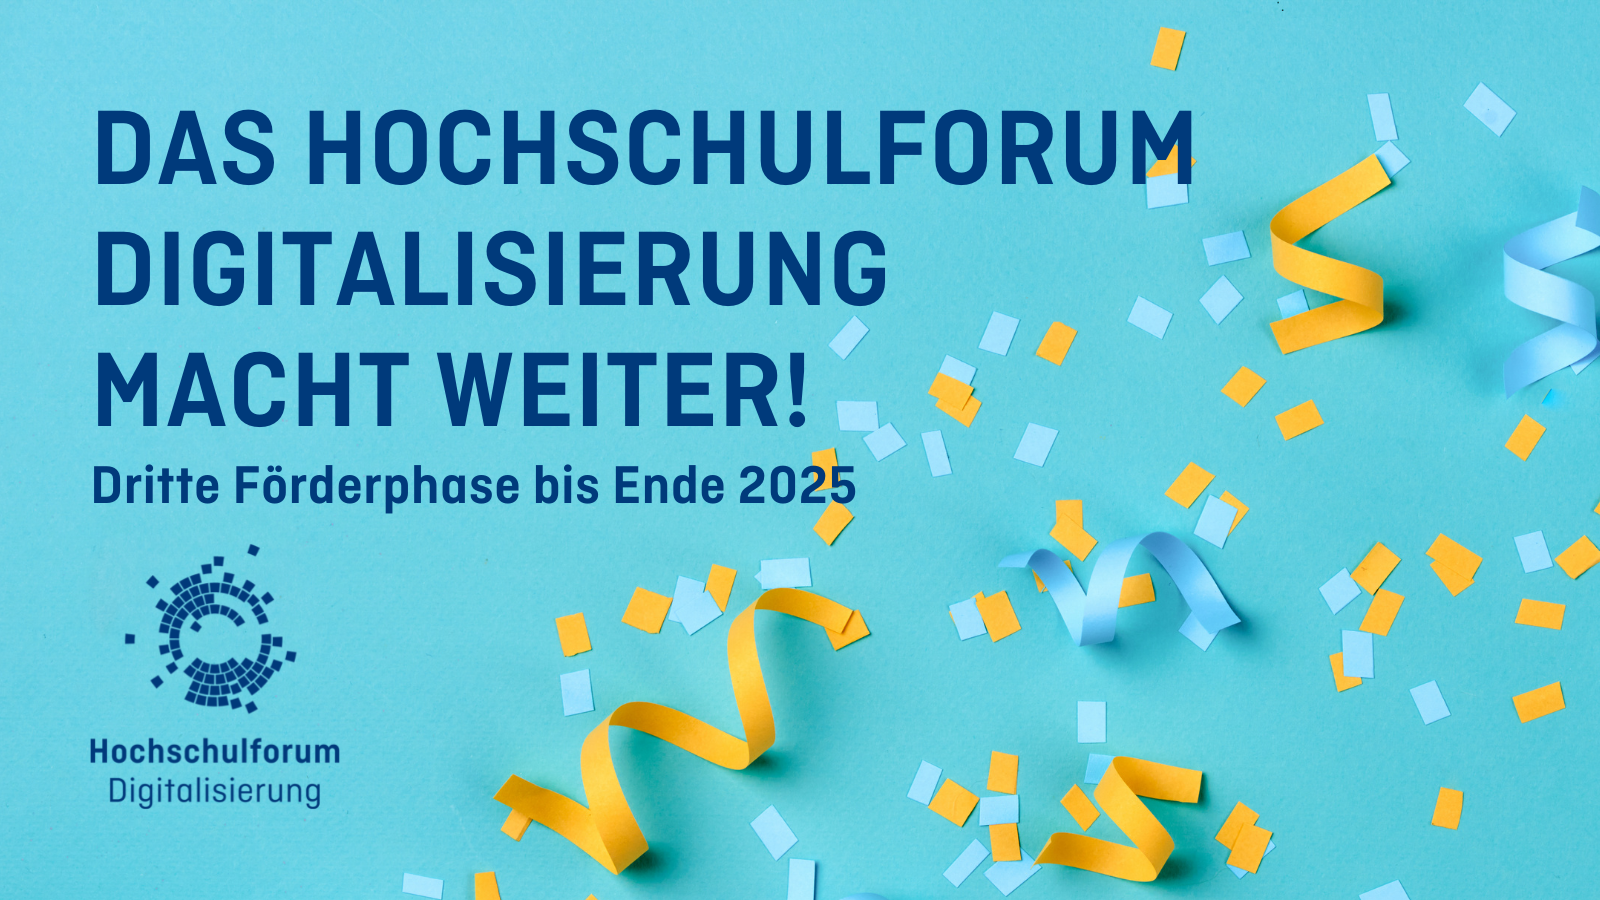 blaue und orange Konfetti und Luftschlangen vor türkisem Hintergrund. Text: "Das Hochschulforum Digitalisierung macht weiter!"